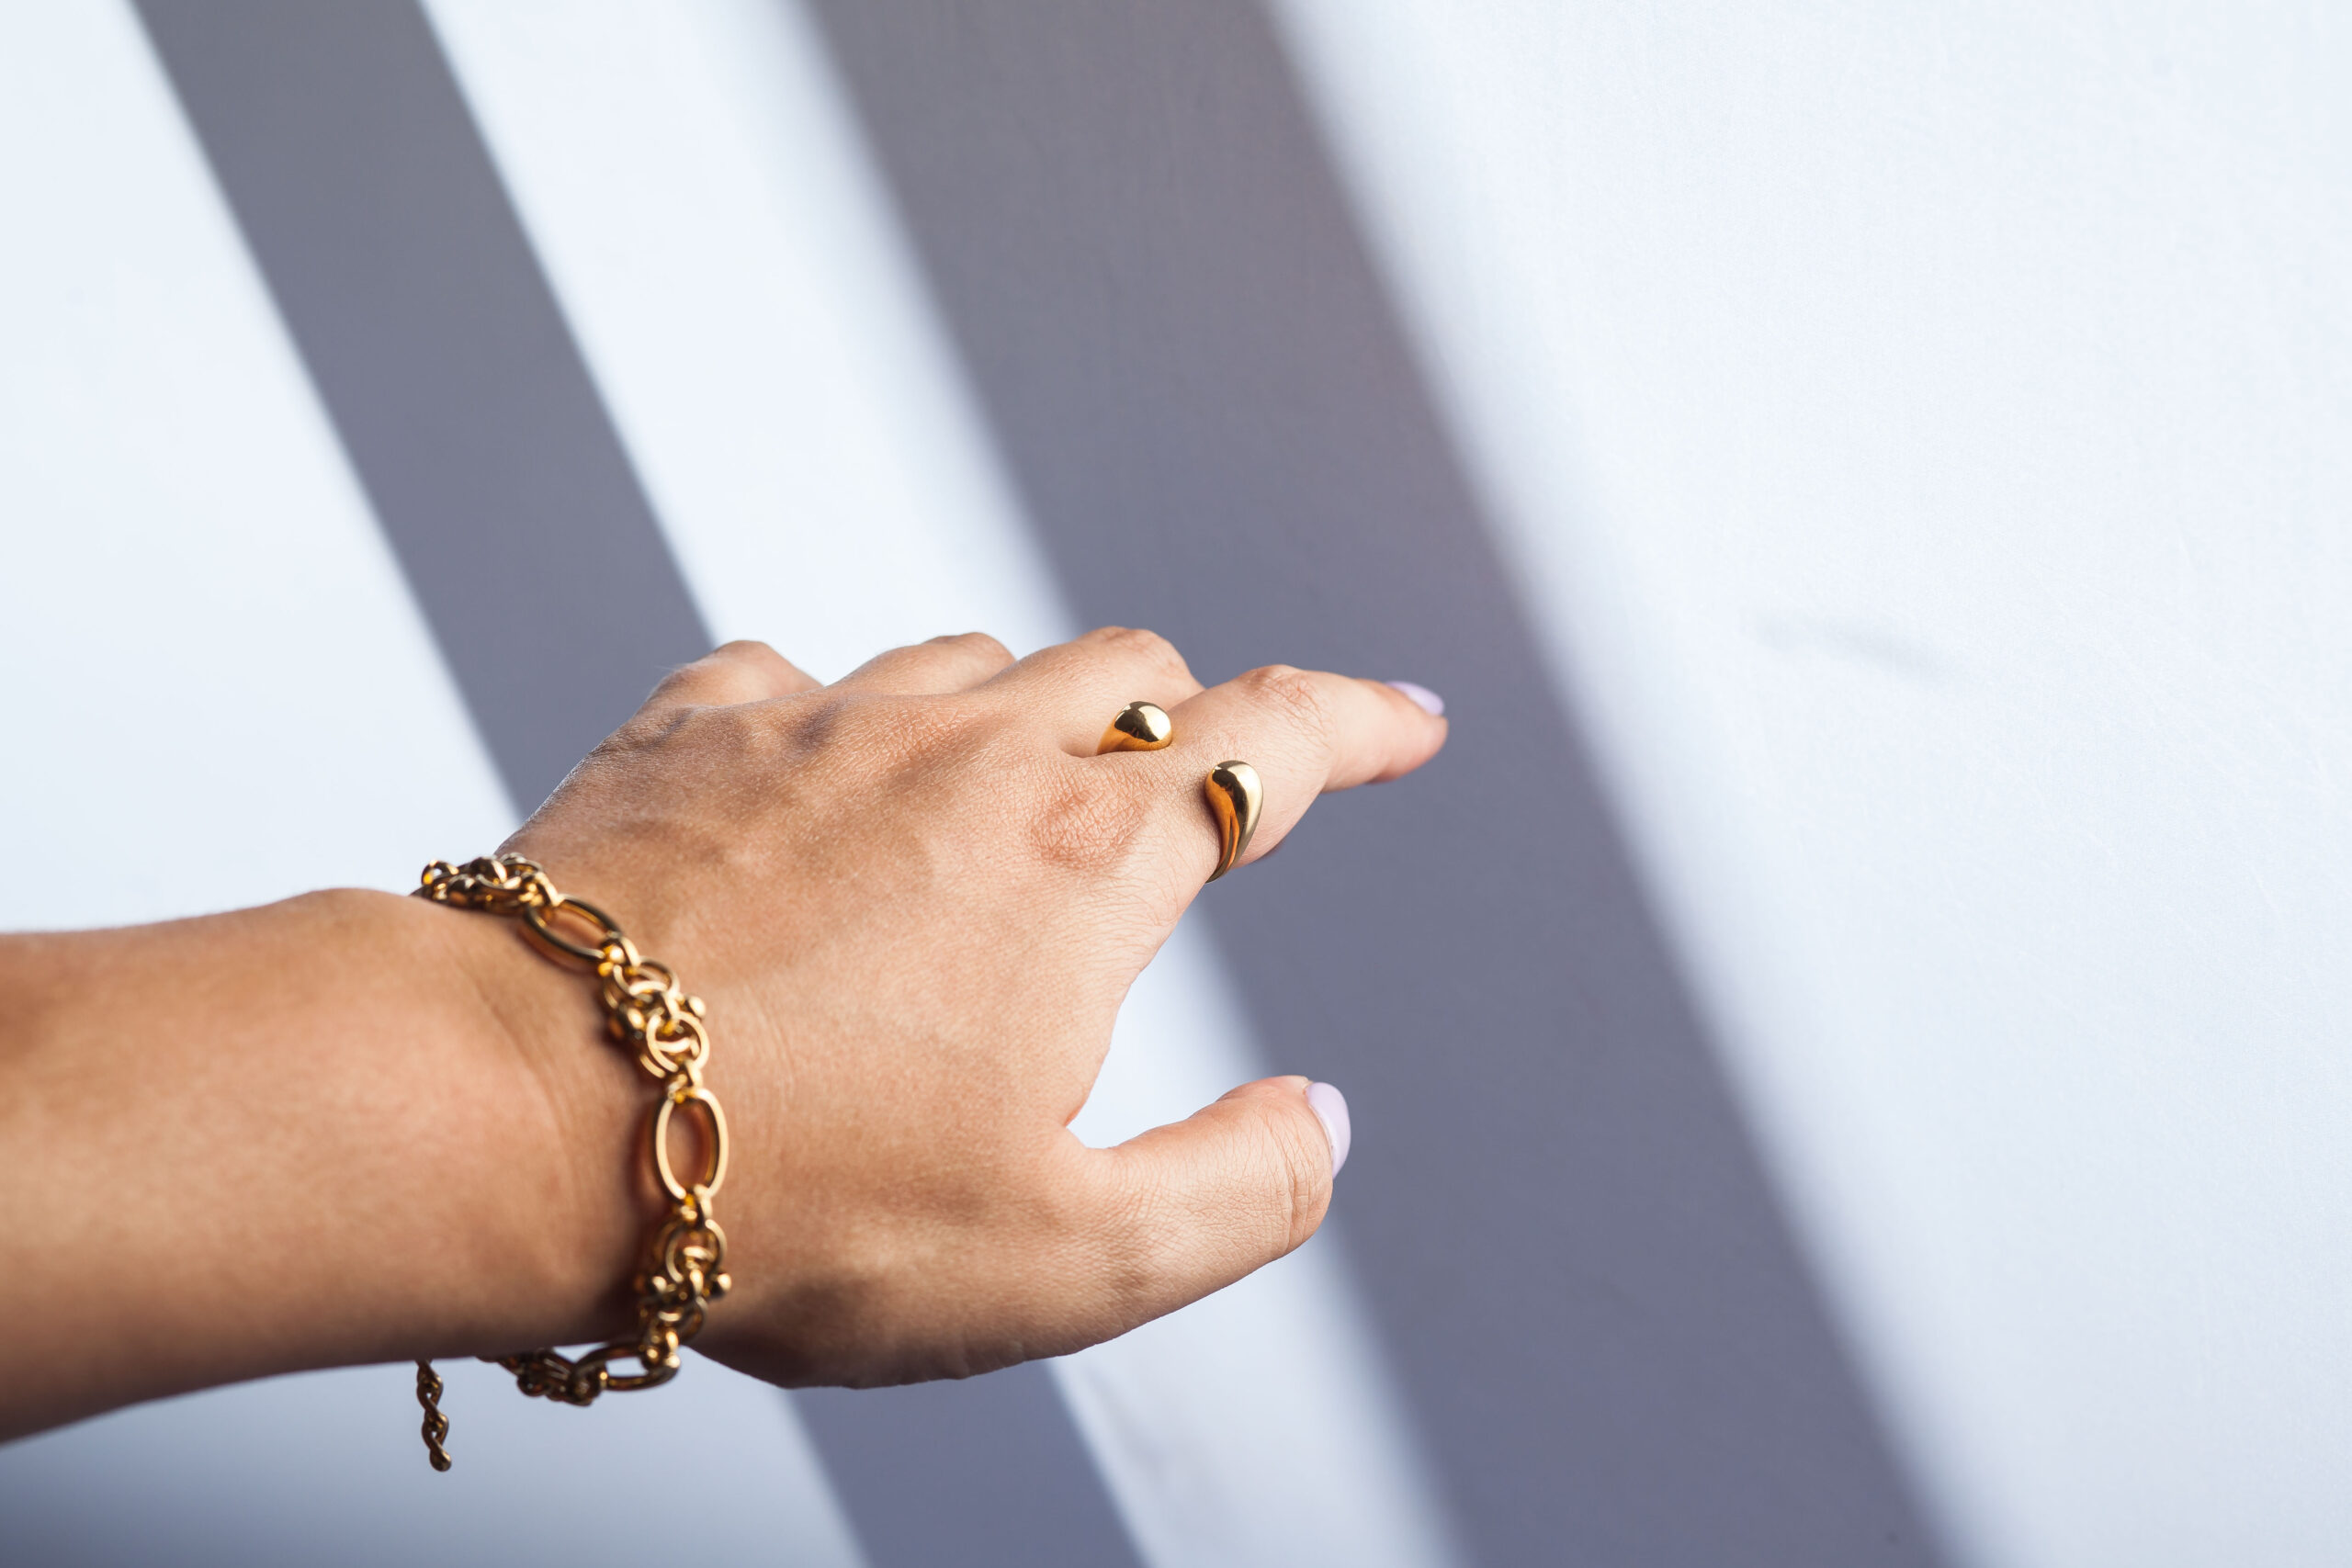 Elevando o Estilo: Descubra o Significado dos Anéis em Cada Dedo! 💫✨